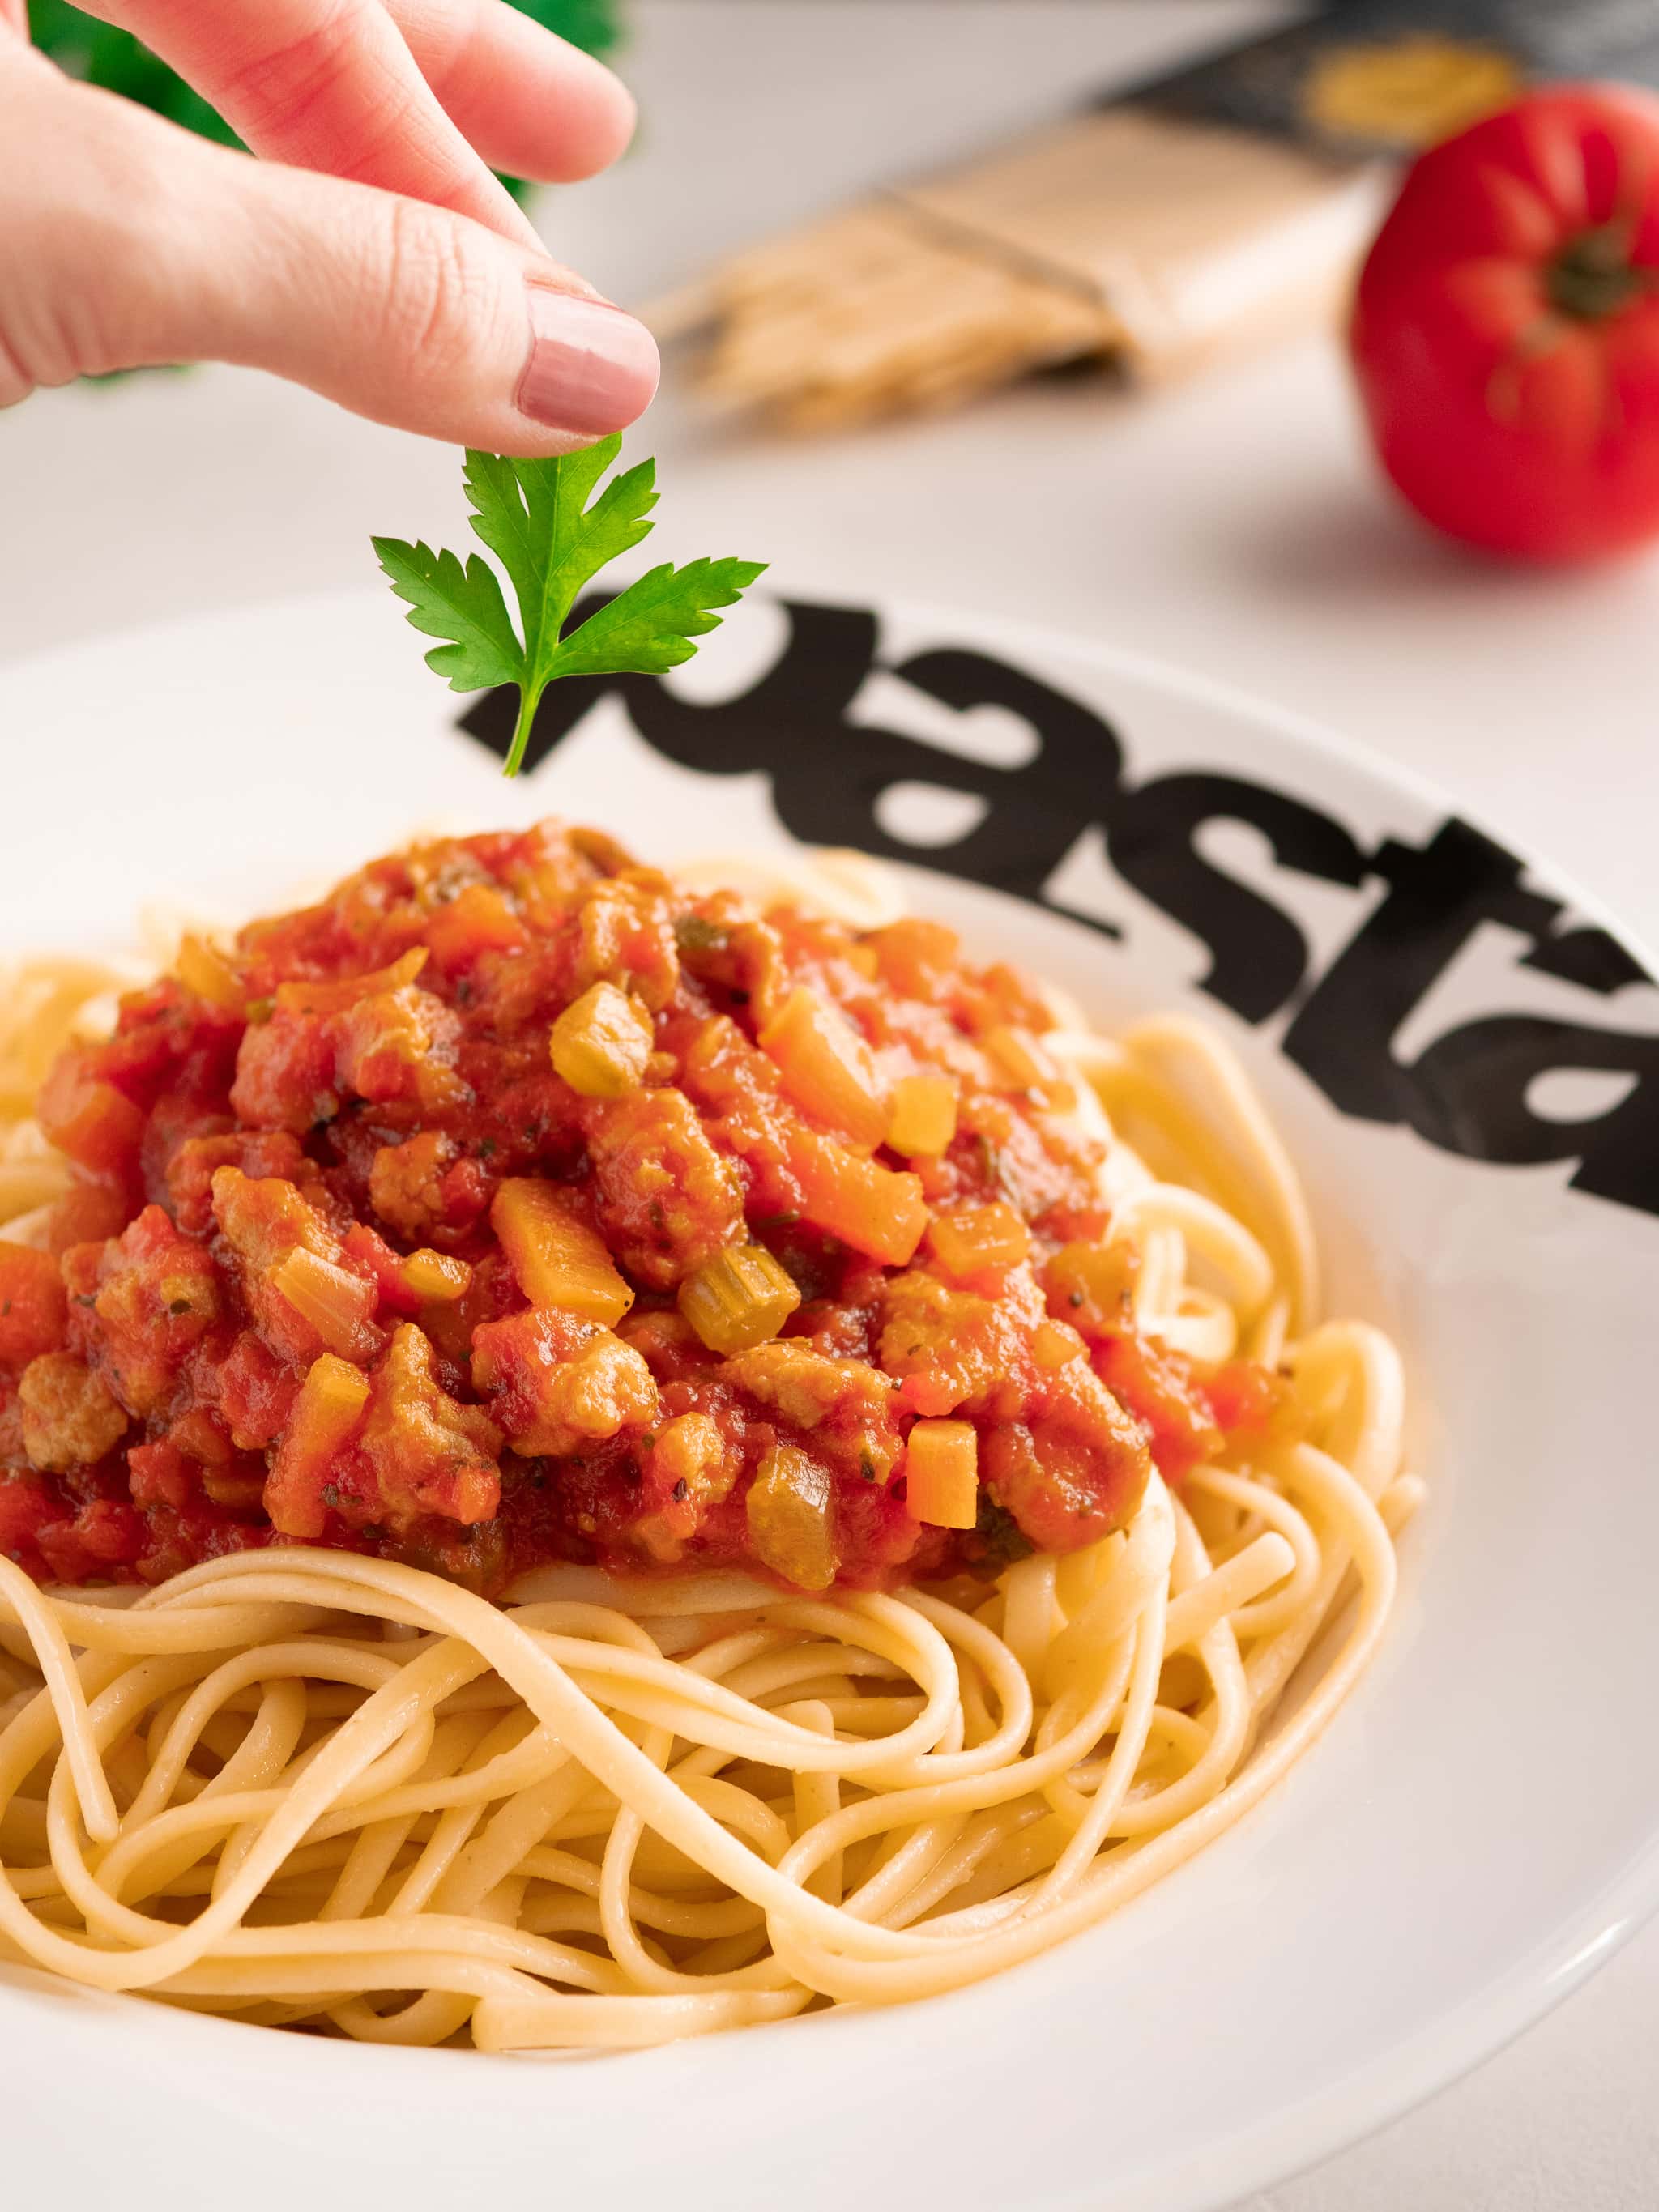 marion dépose une feuille de persil sur un plat de spaghetti bolognaise dans une assiette à pâtes